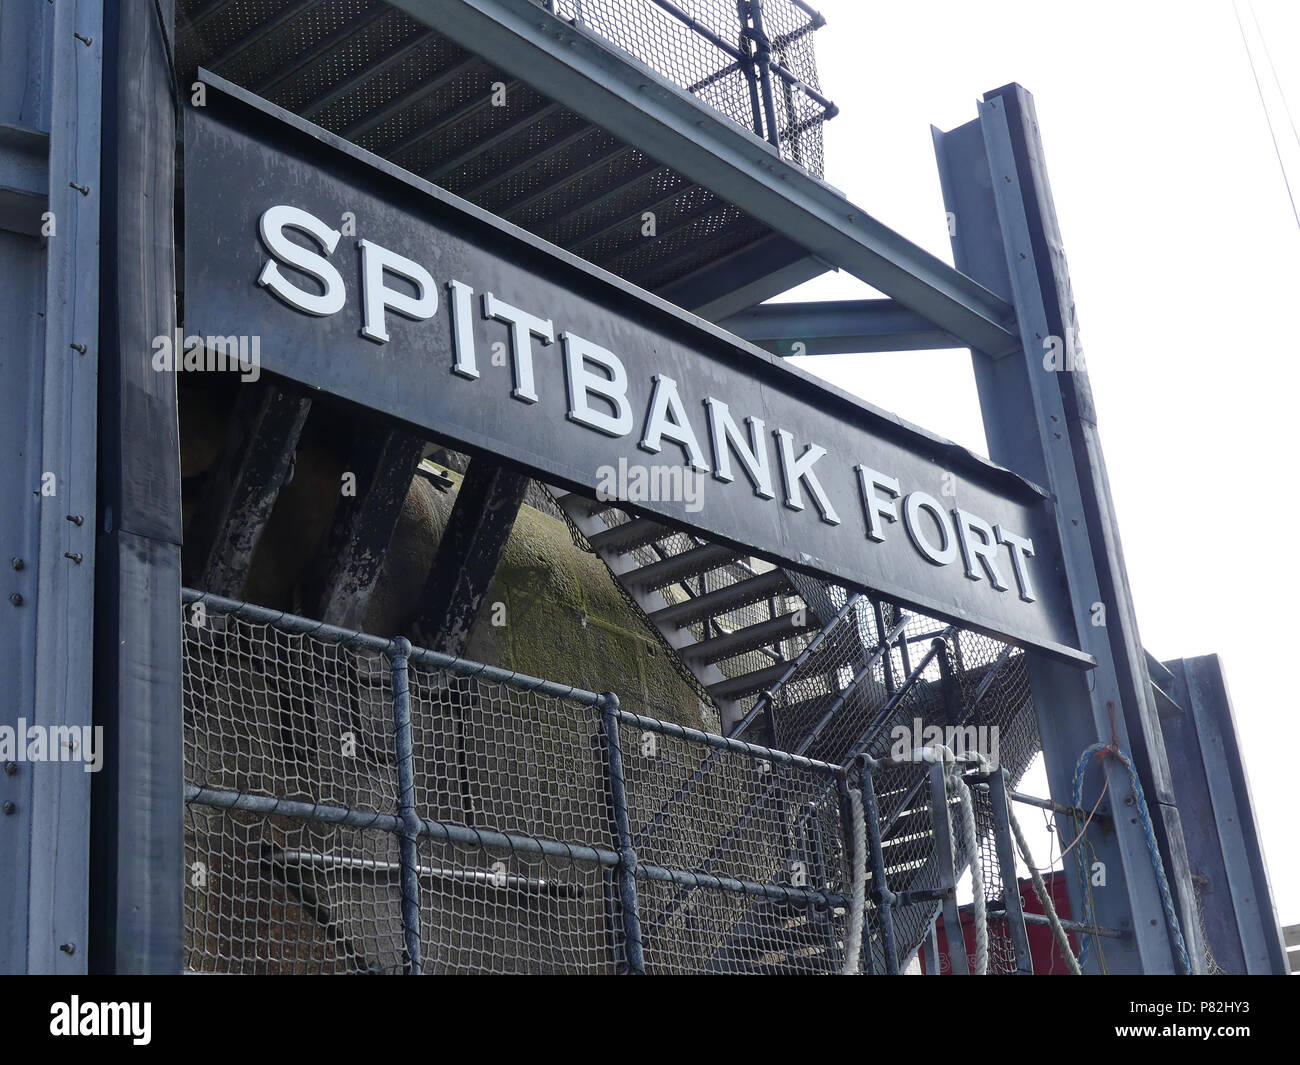 SPITBANK FORT en el Solent. Foto: Tony Gale Foto de stock